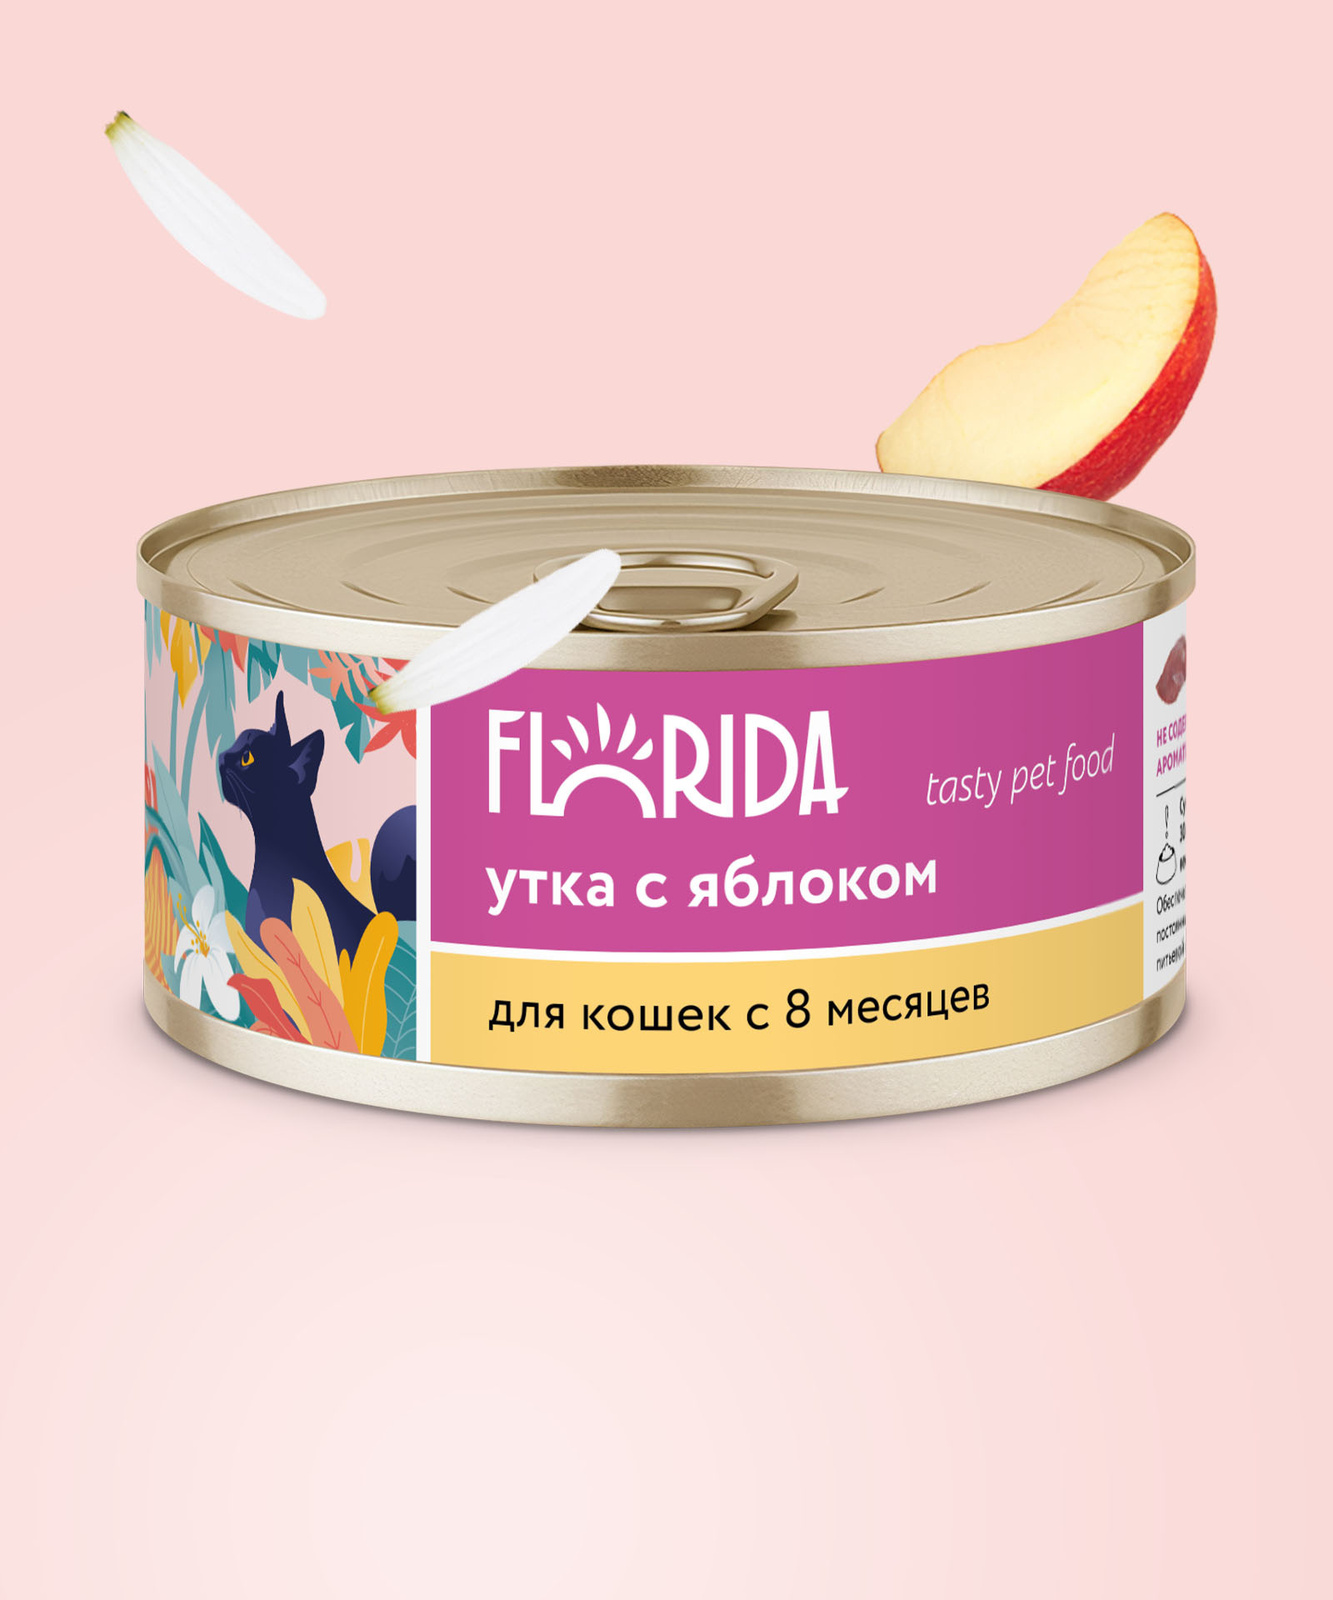 FLORIDA консервы FLORIDA консервы для кошек Утка с яблоком (100 г) цена и фото